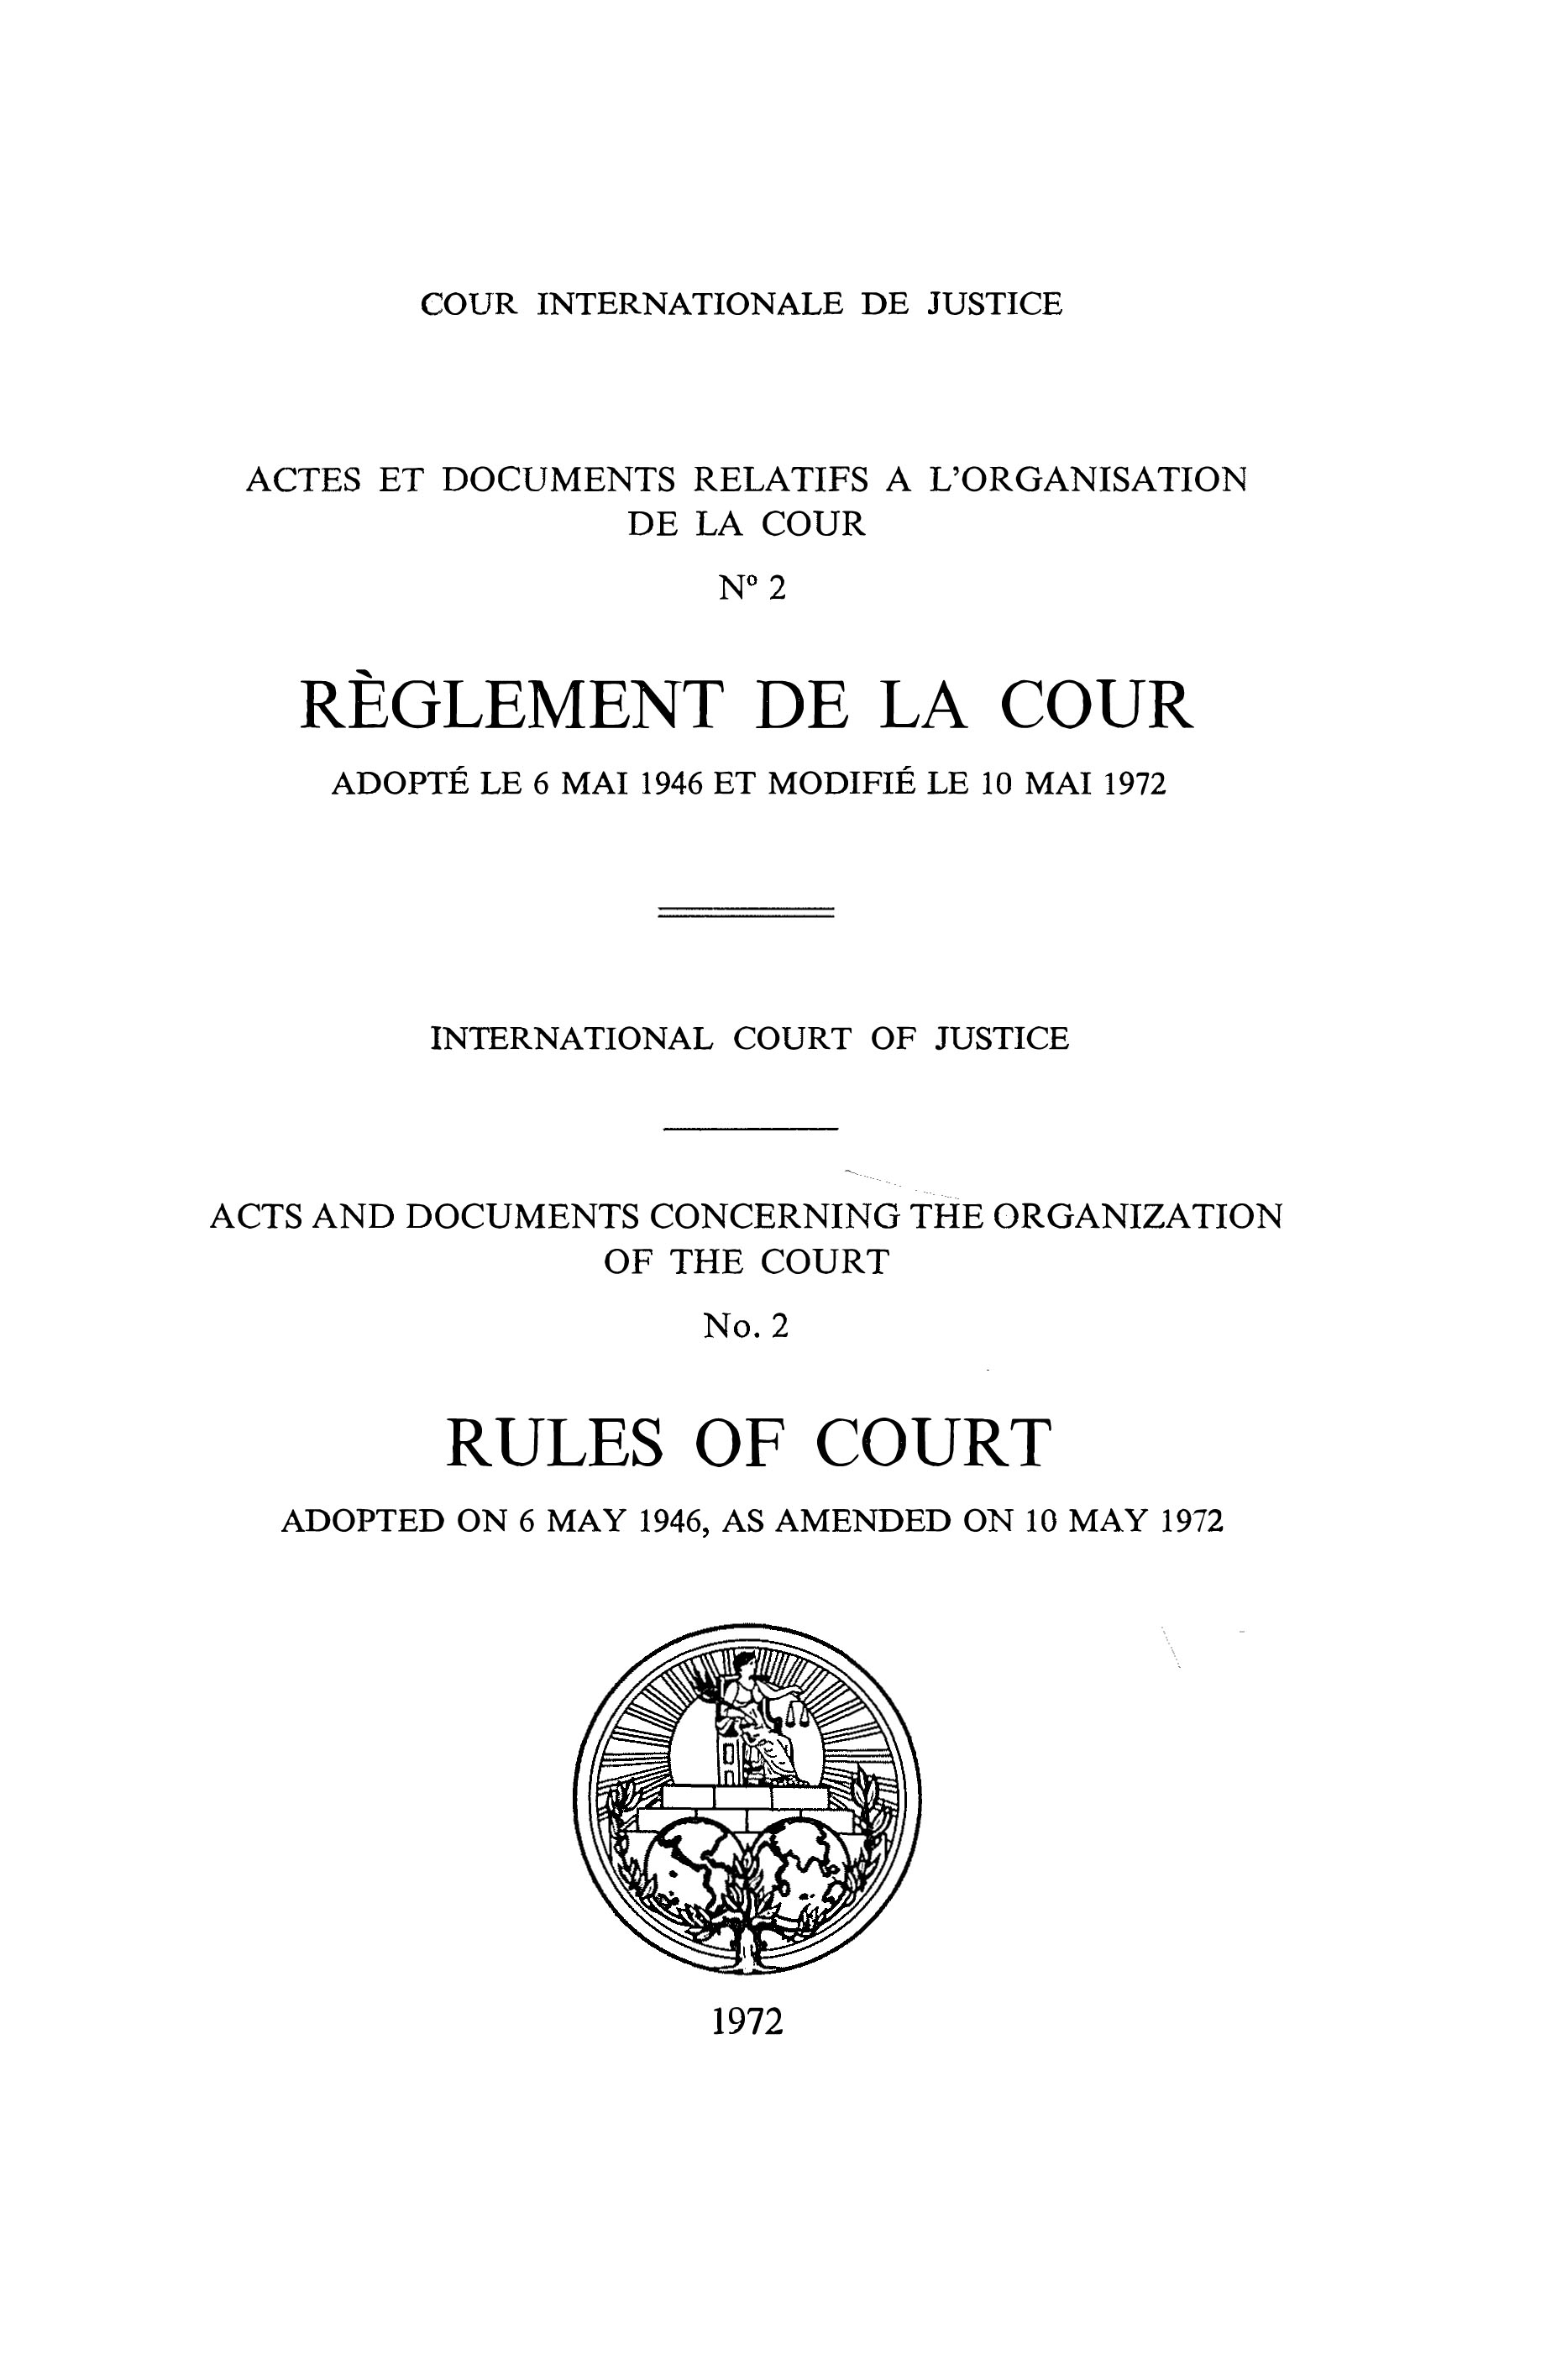 image of Actes et documents relatifs à l'organisation de la Cour no. 2